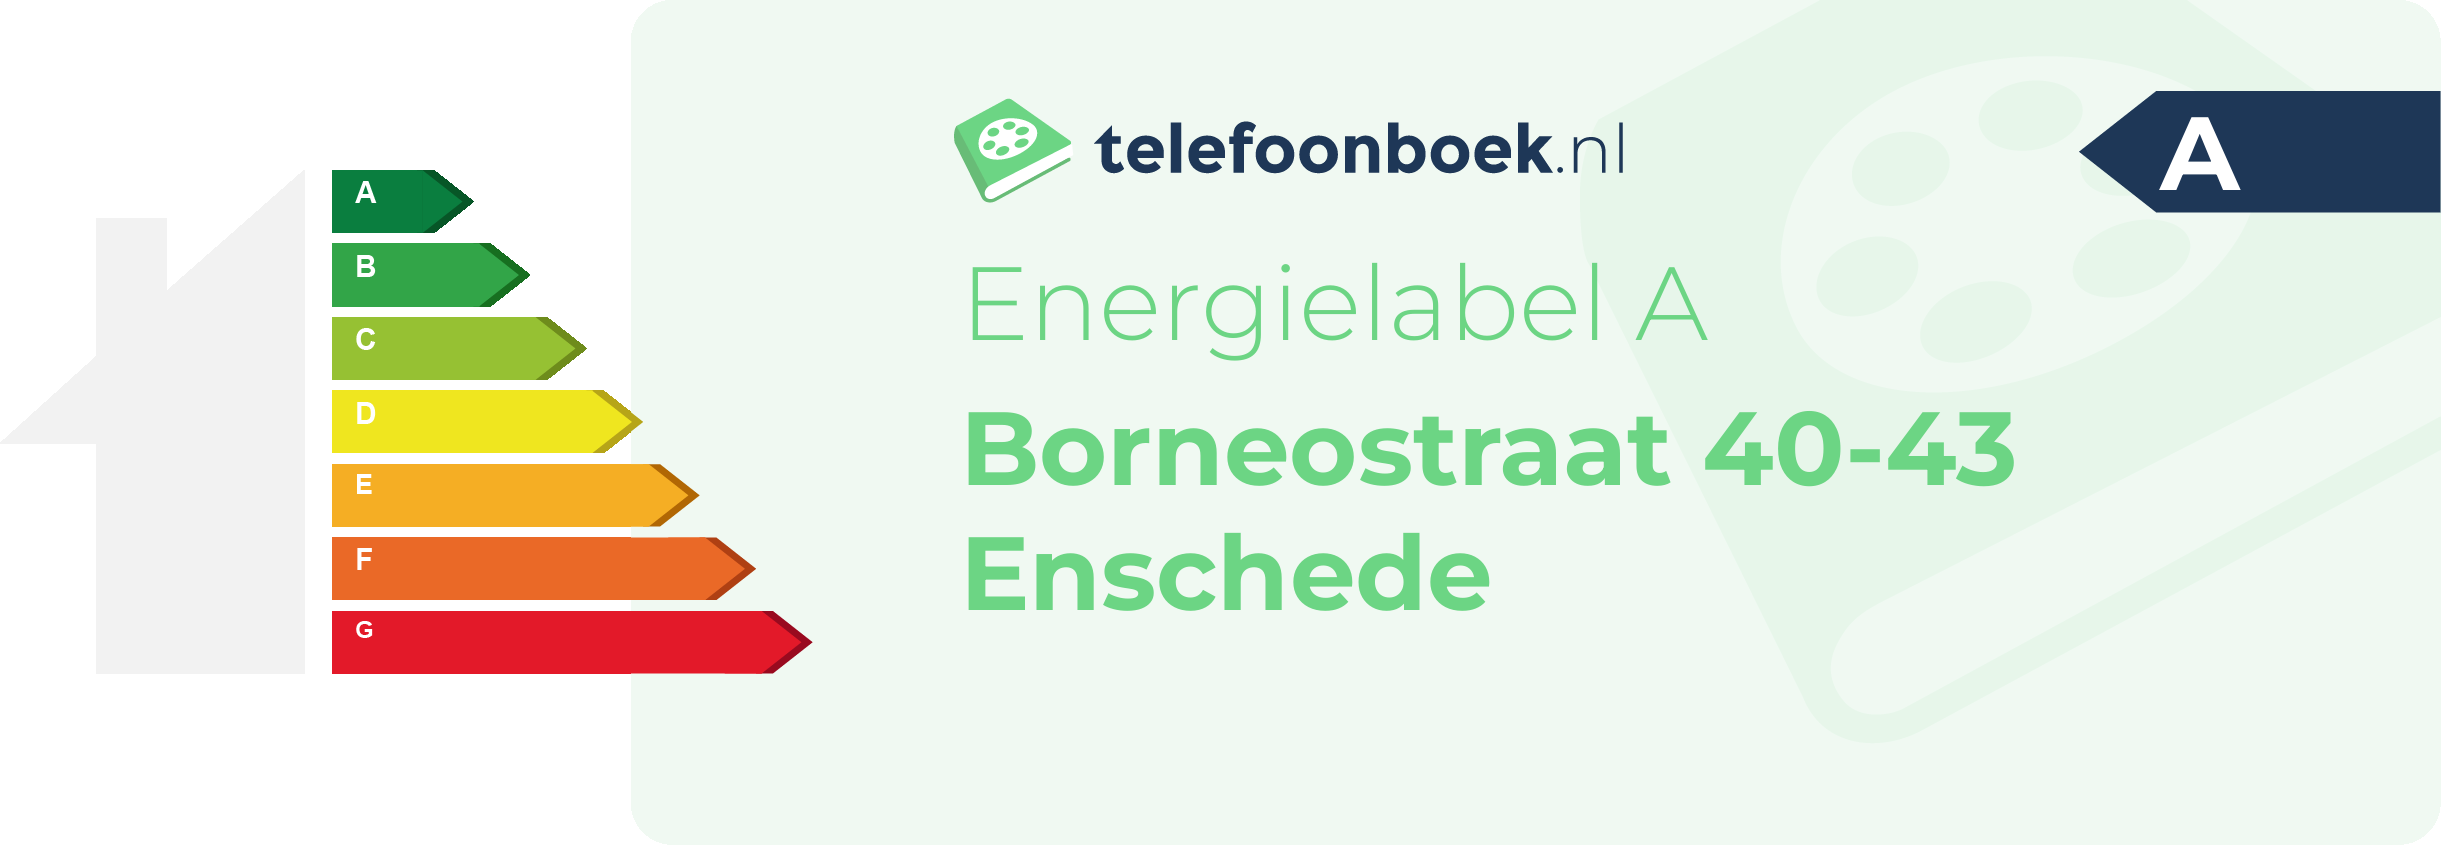 Energielabel Borneostraat 40-43 Enschede